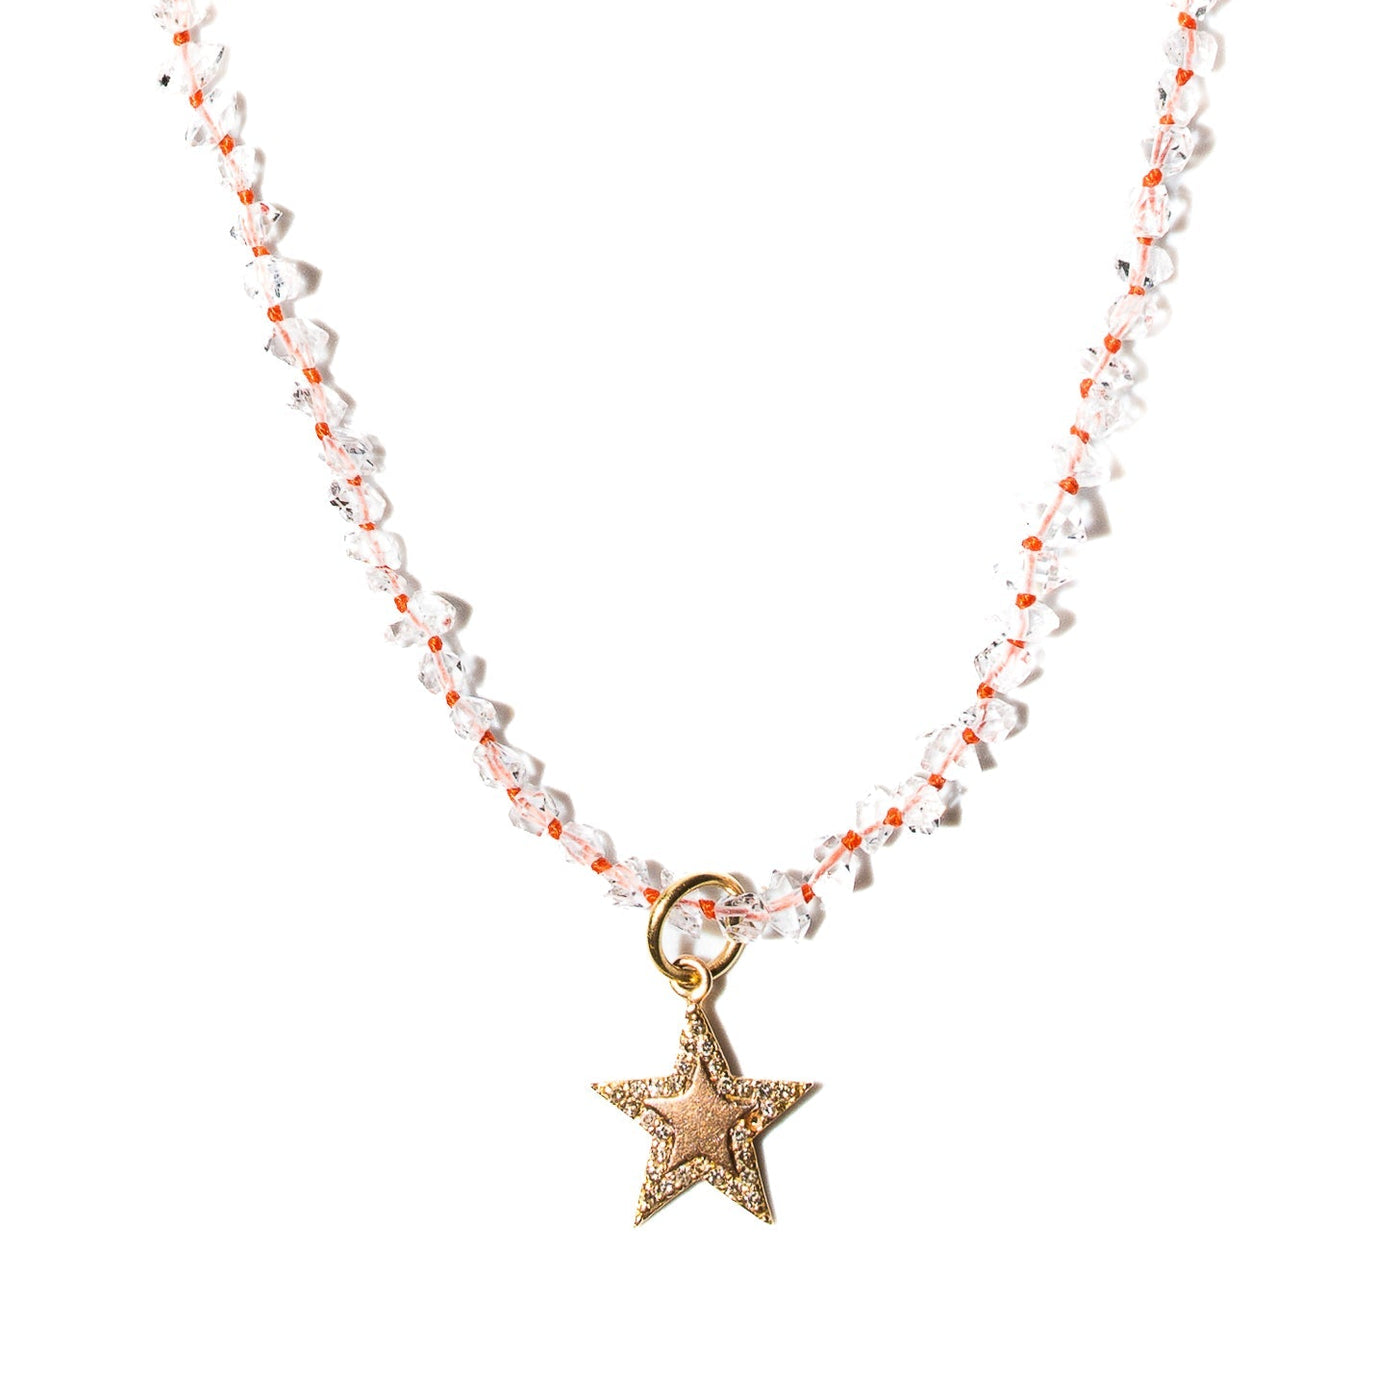 Hackamore Diamond Necklace with Flamingo Cord